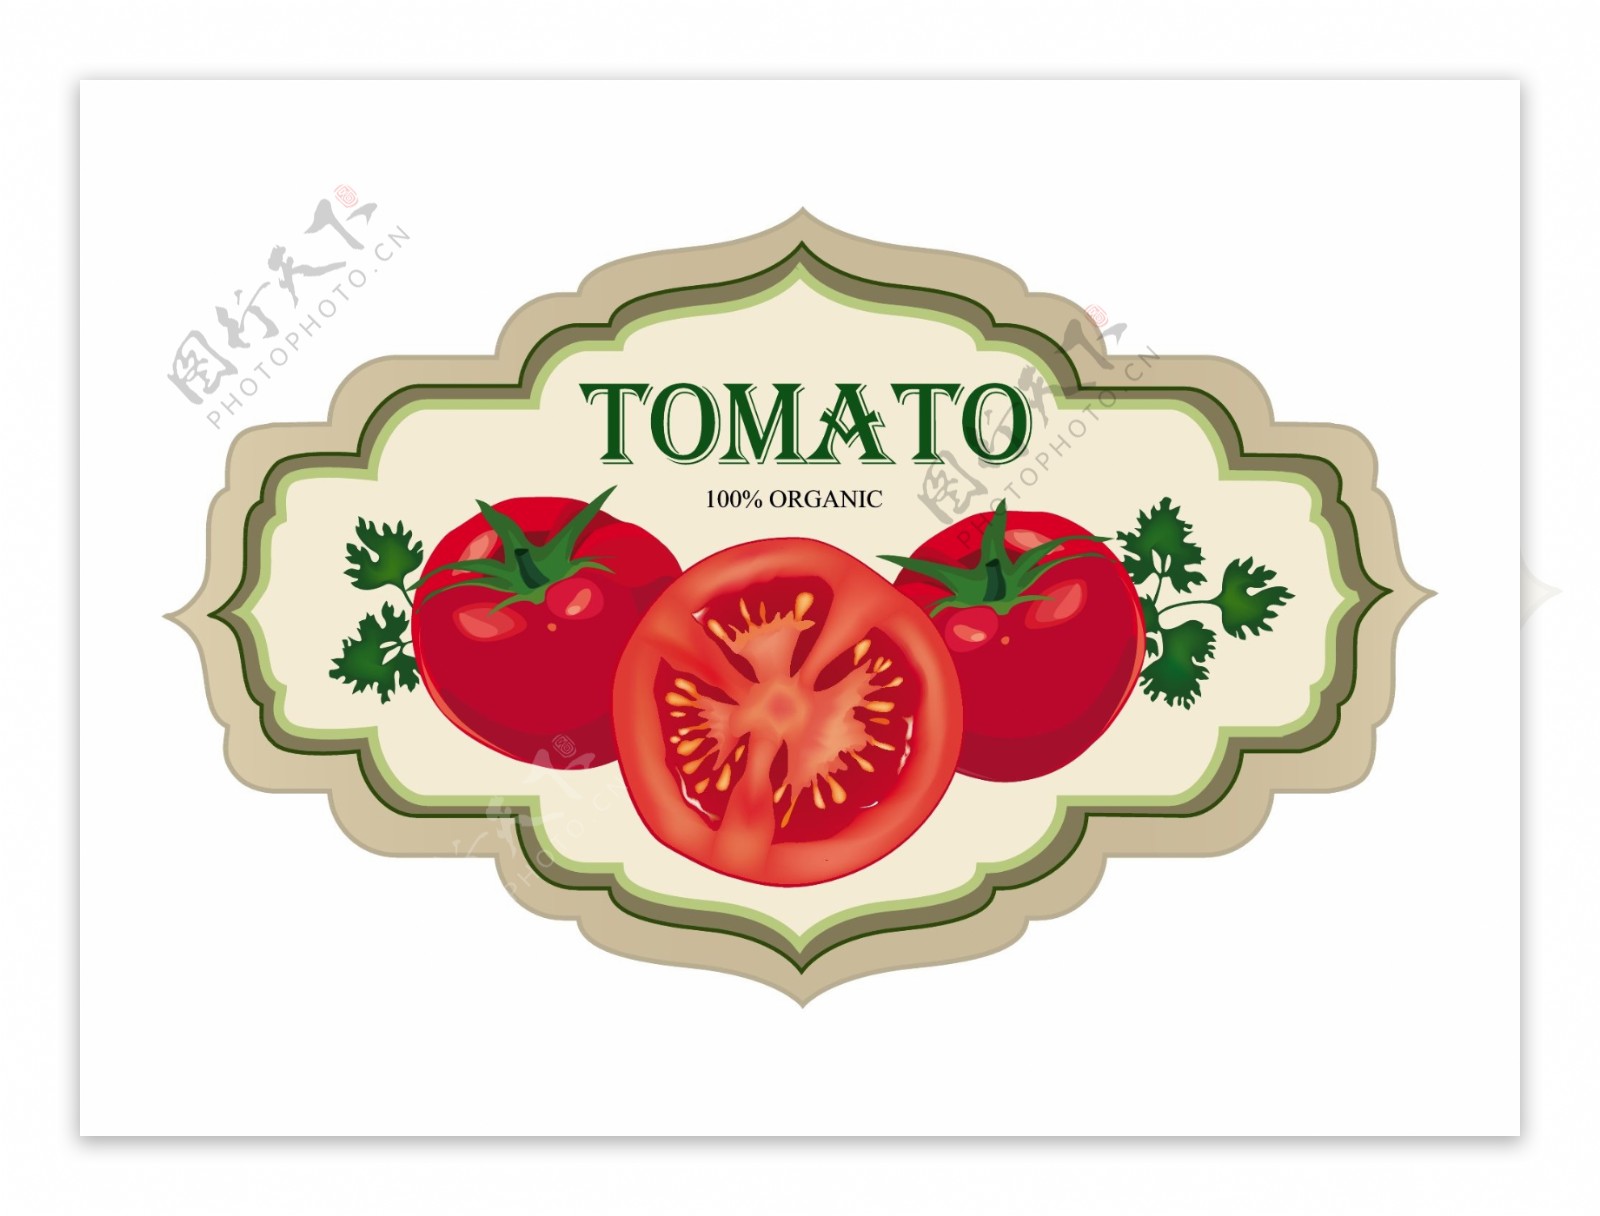 老式的番茄标签设计矢量